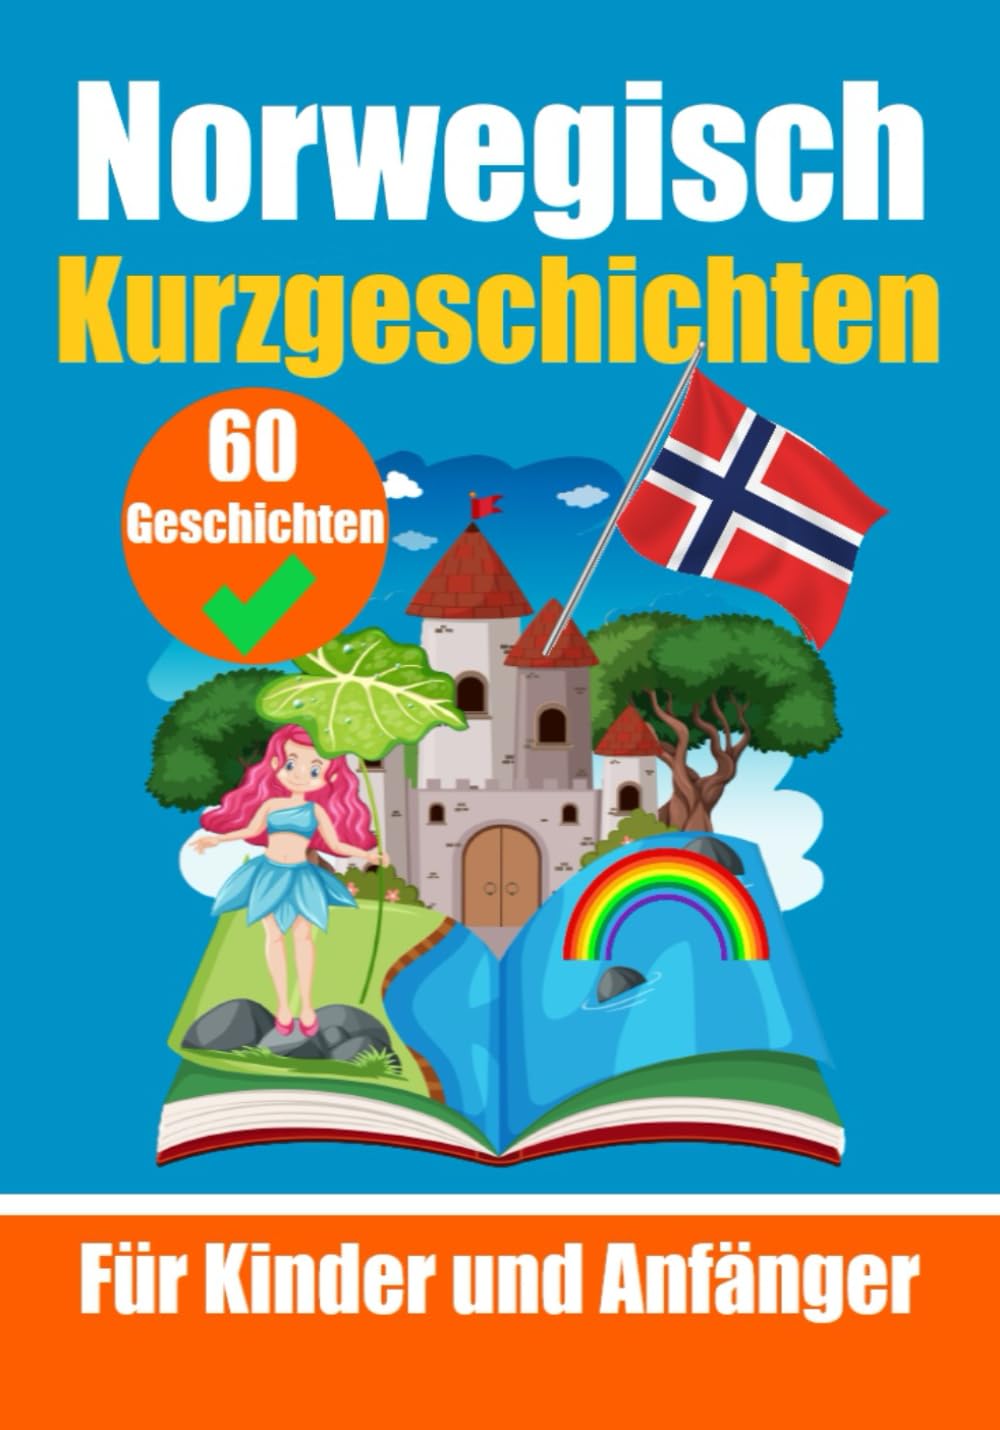 60 Kurzgeschichten auf Norwegisch | Für Kinder un Anfänger